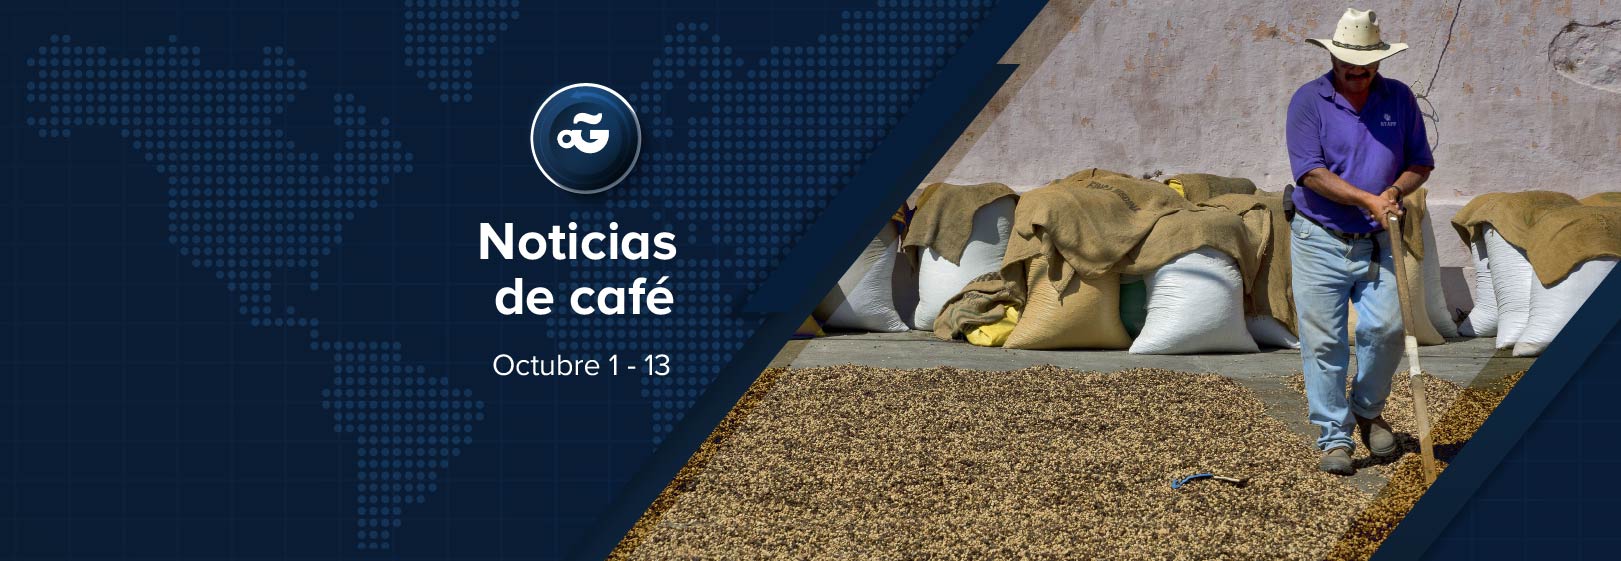 Noticias sobre café en América Latina